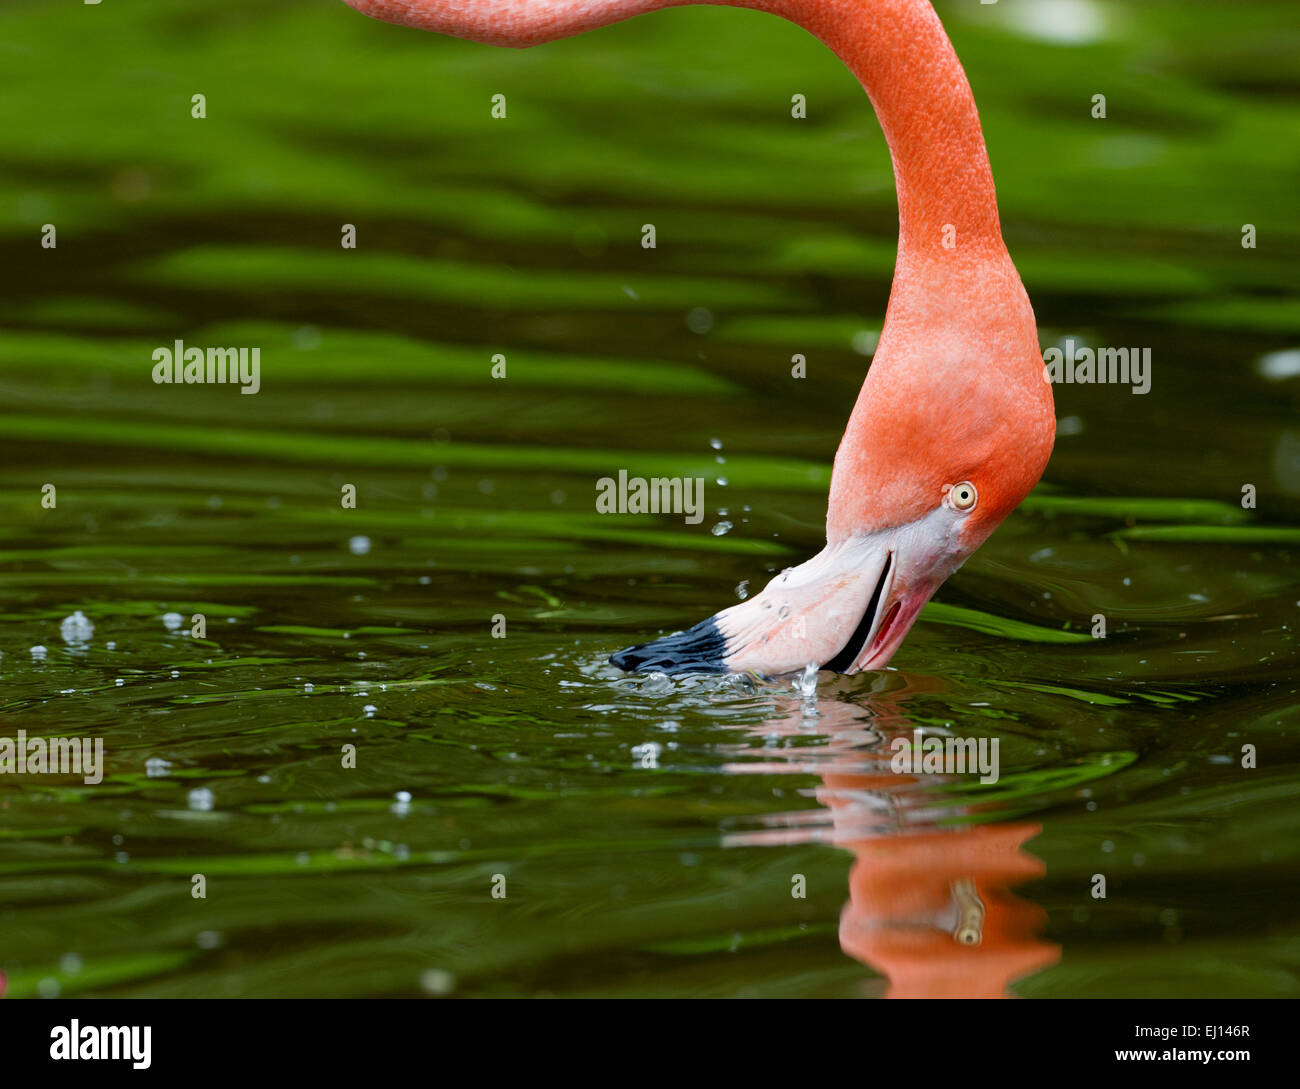 Image shows flamingo filter feeding. Zoo/captive image. Stock Photo